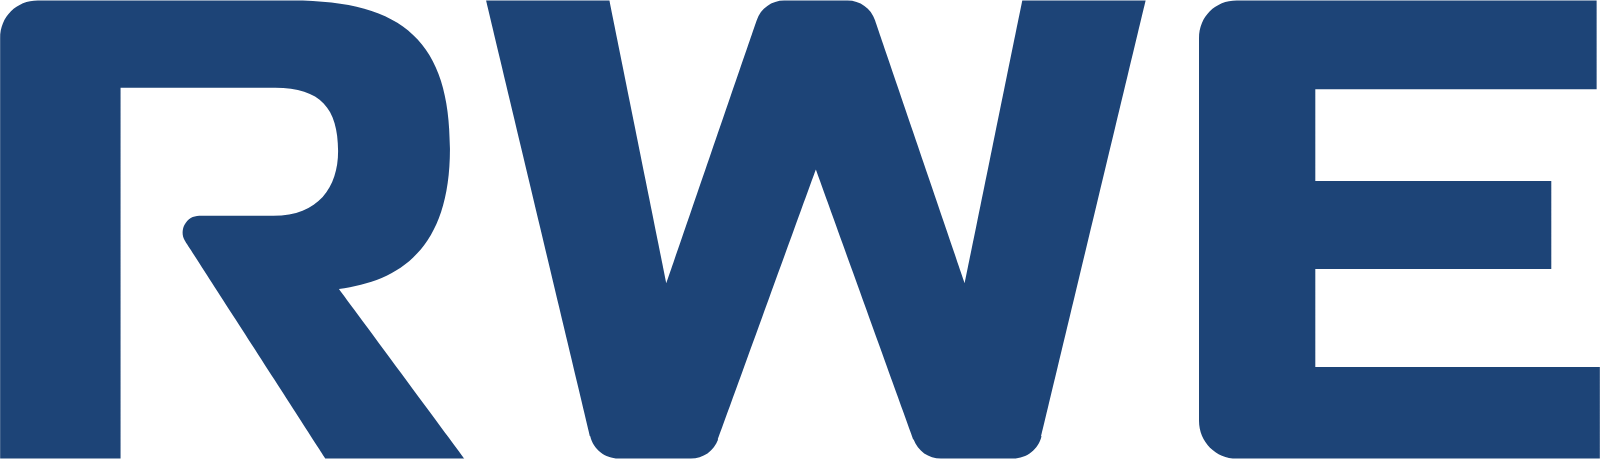 RWE logo (transparent PNG)